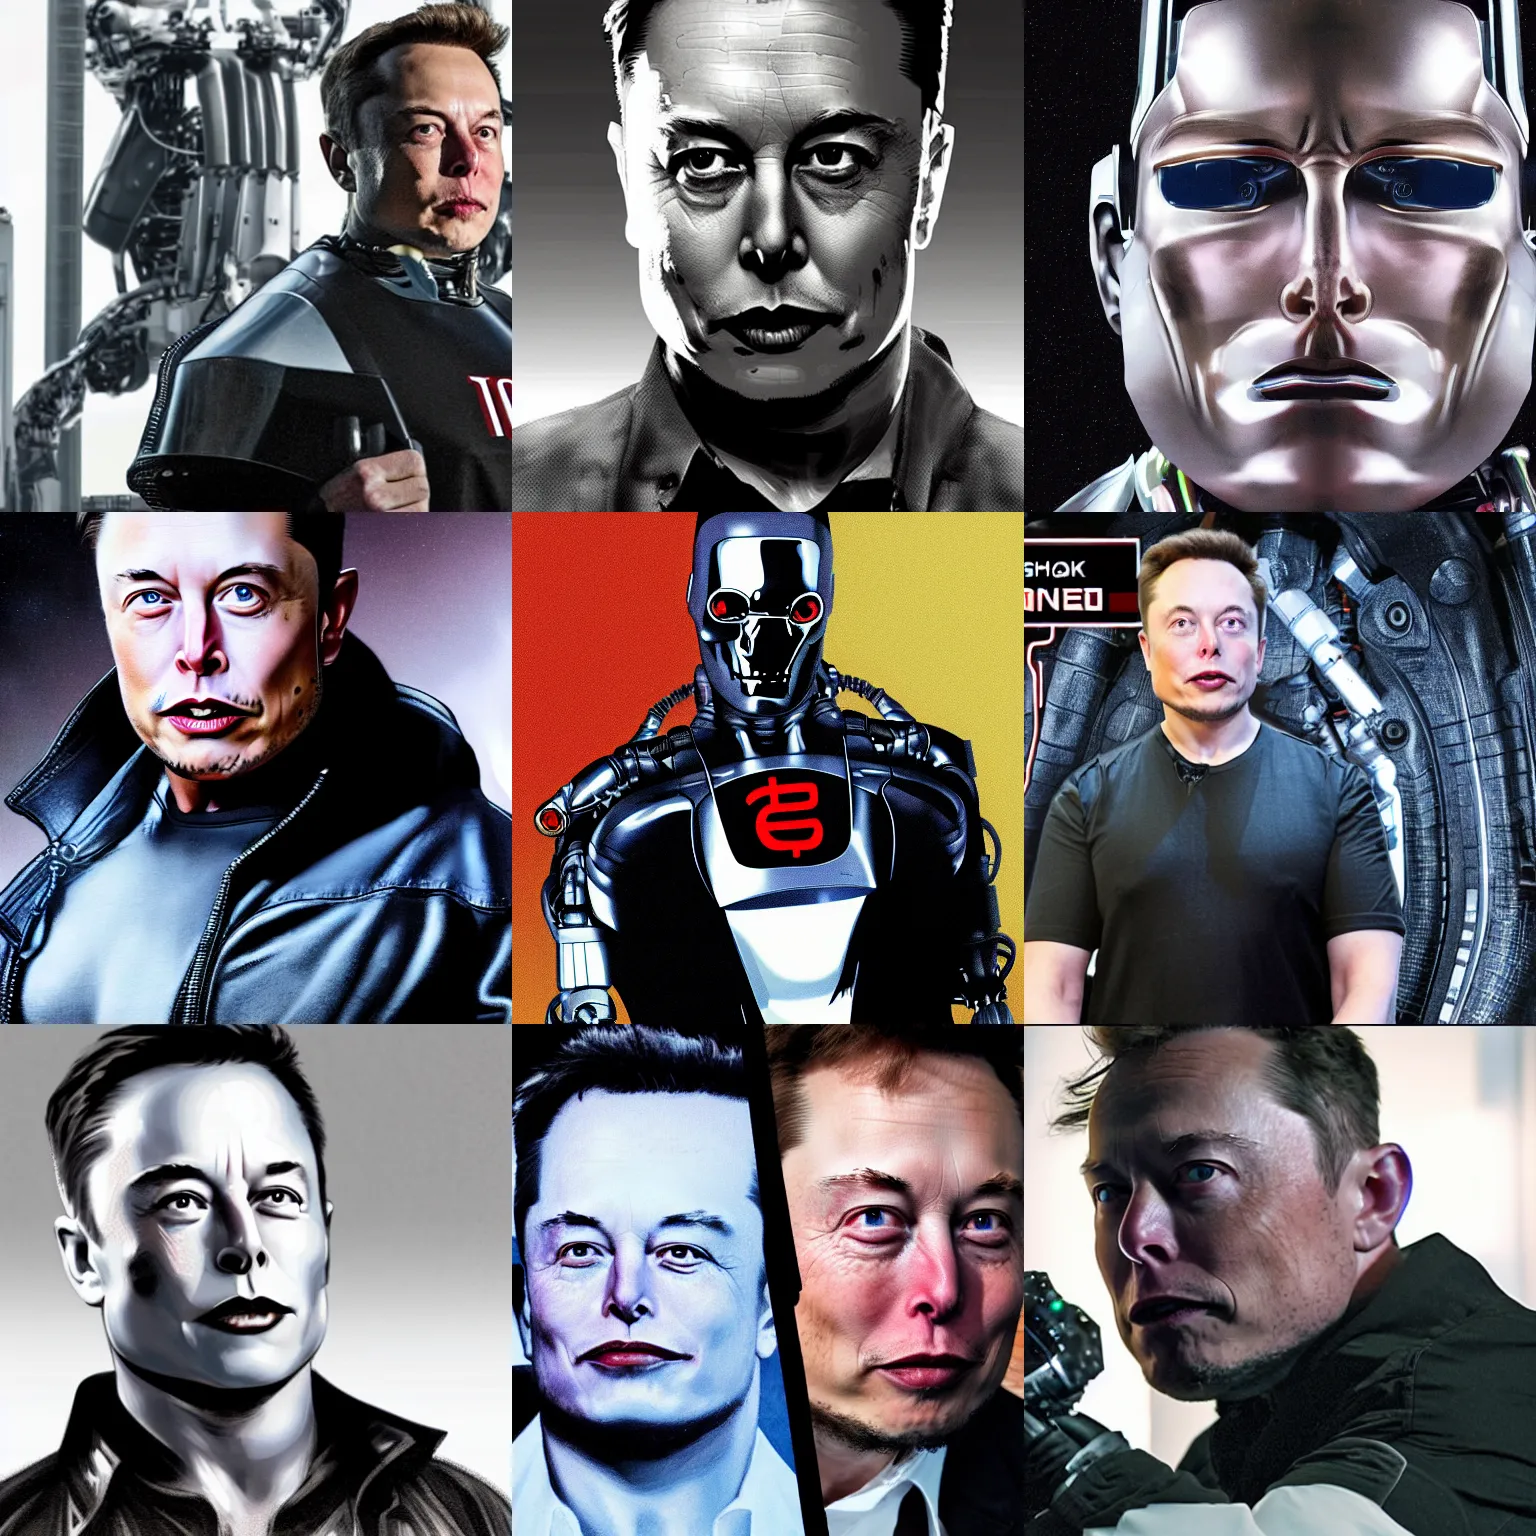 Prompt: Elon musk as a terminator robot